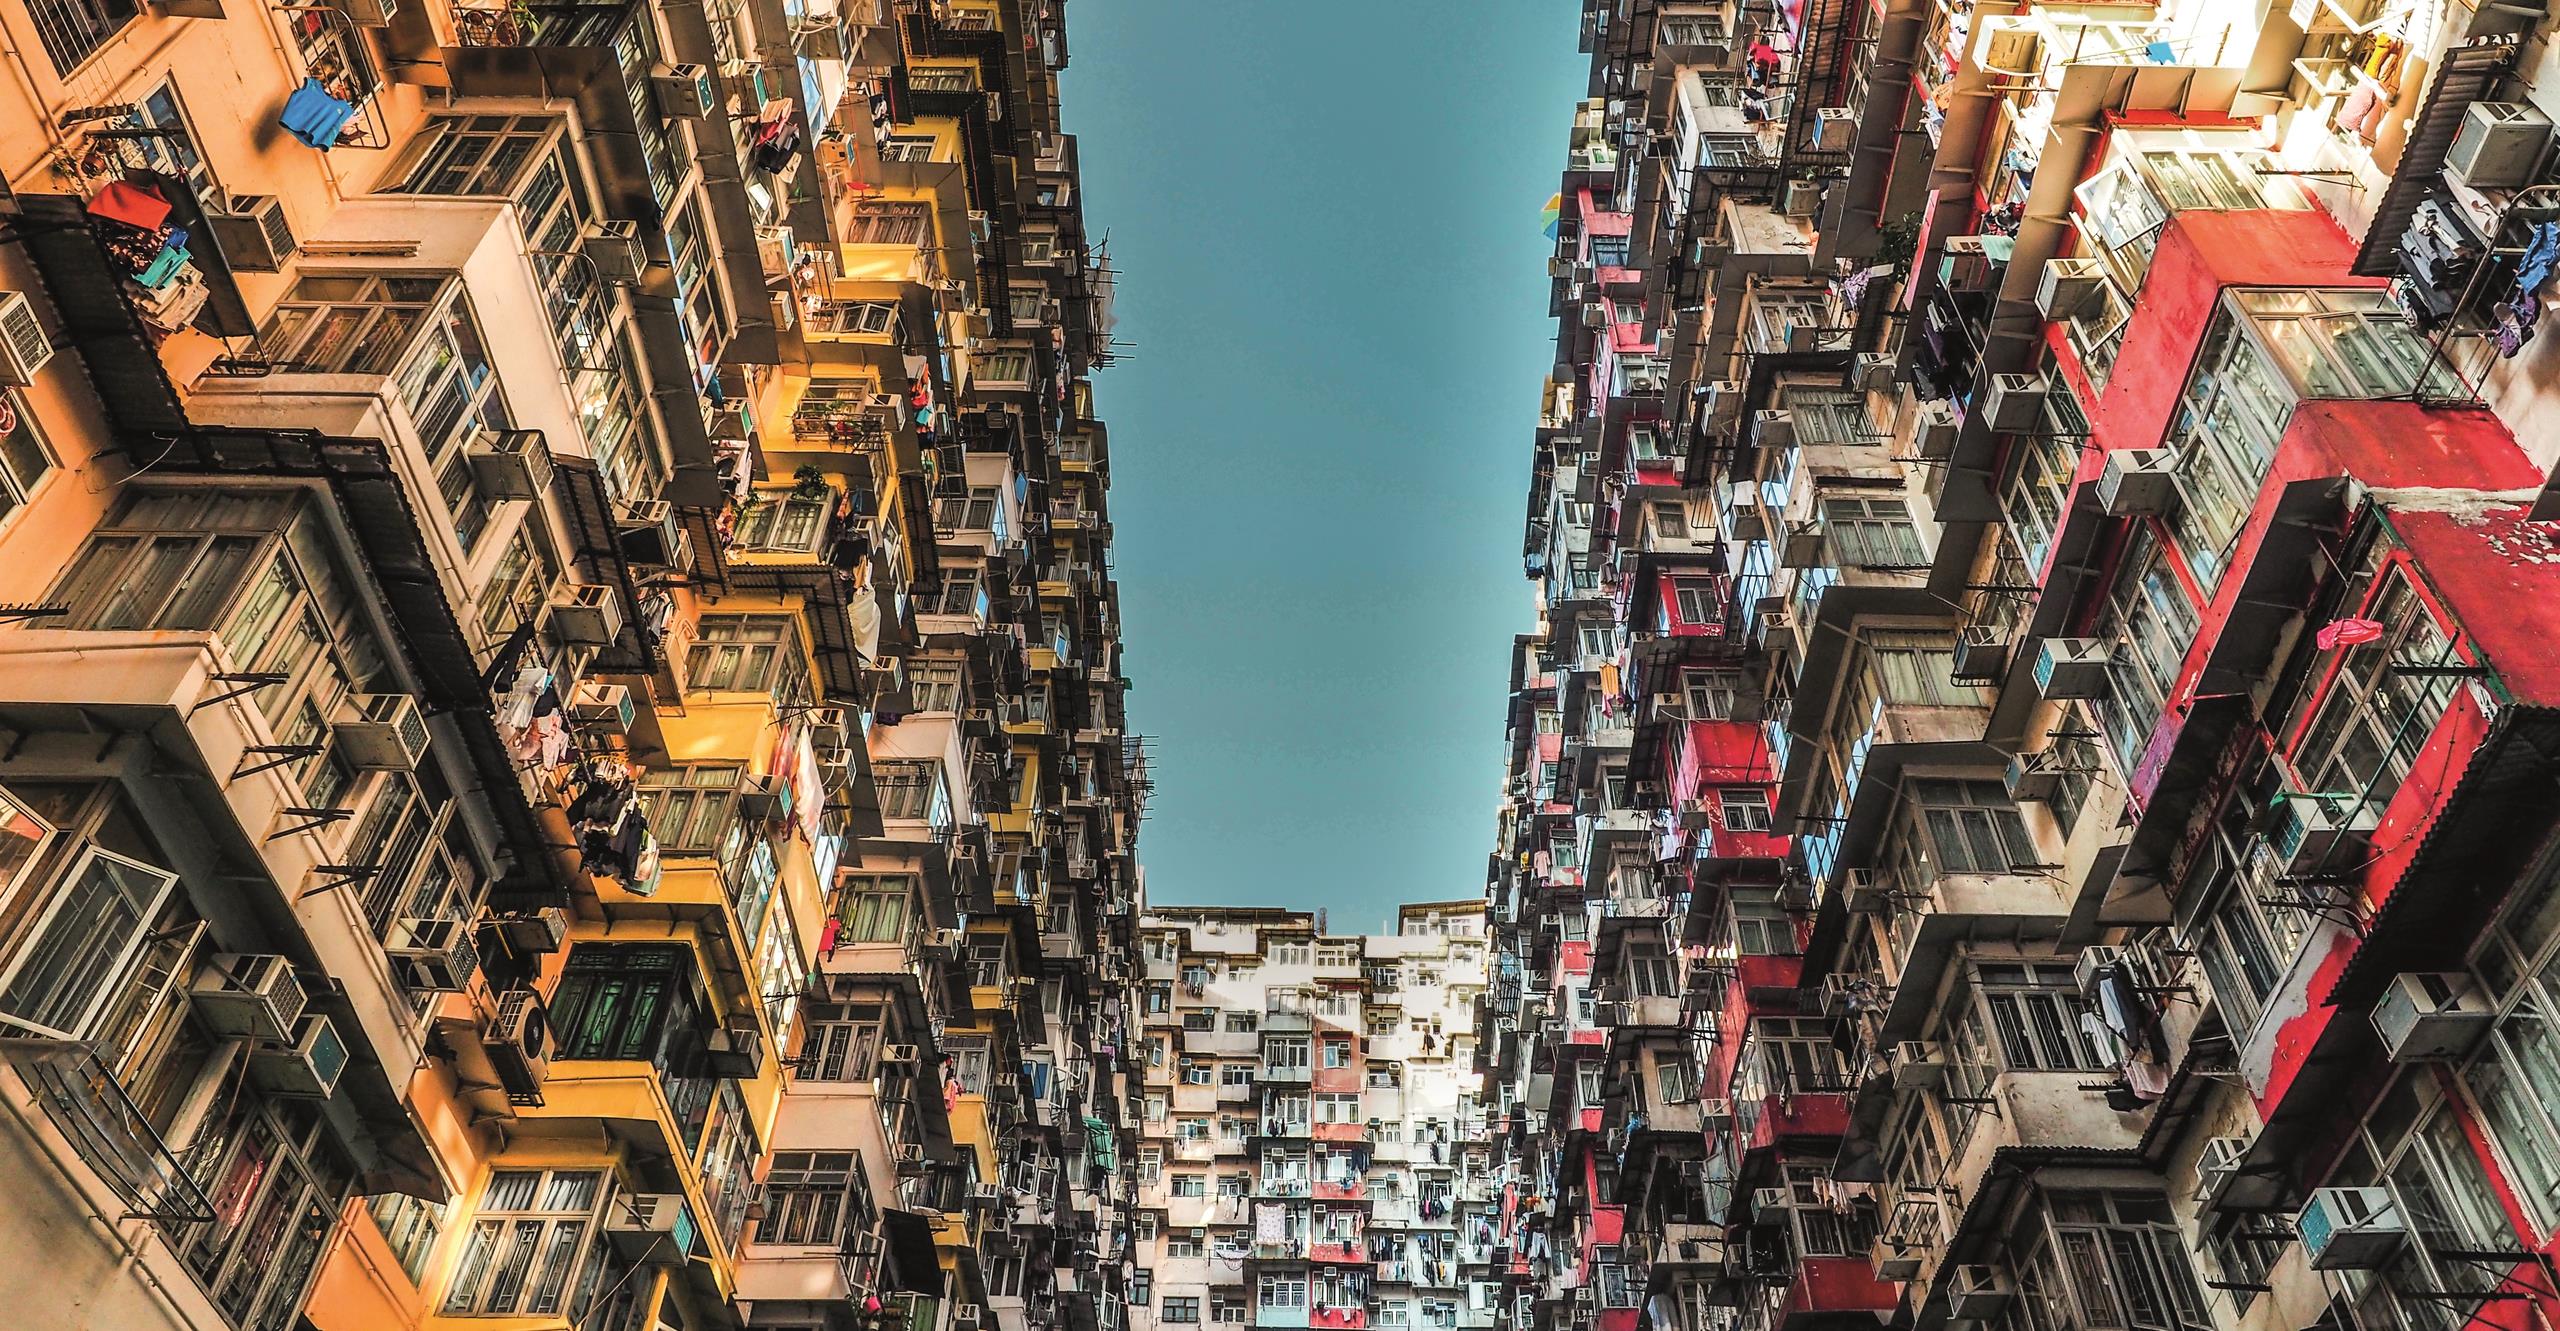 High rise flats in Hong Kong